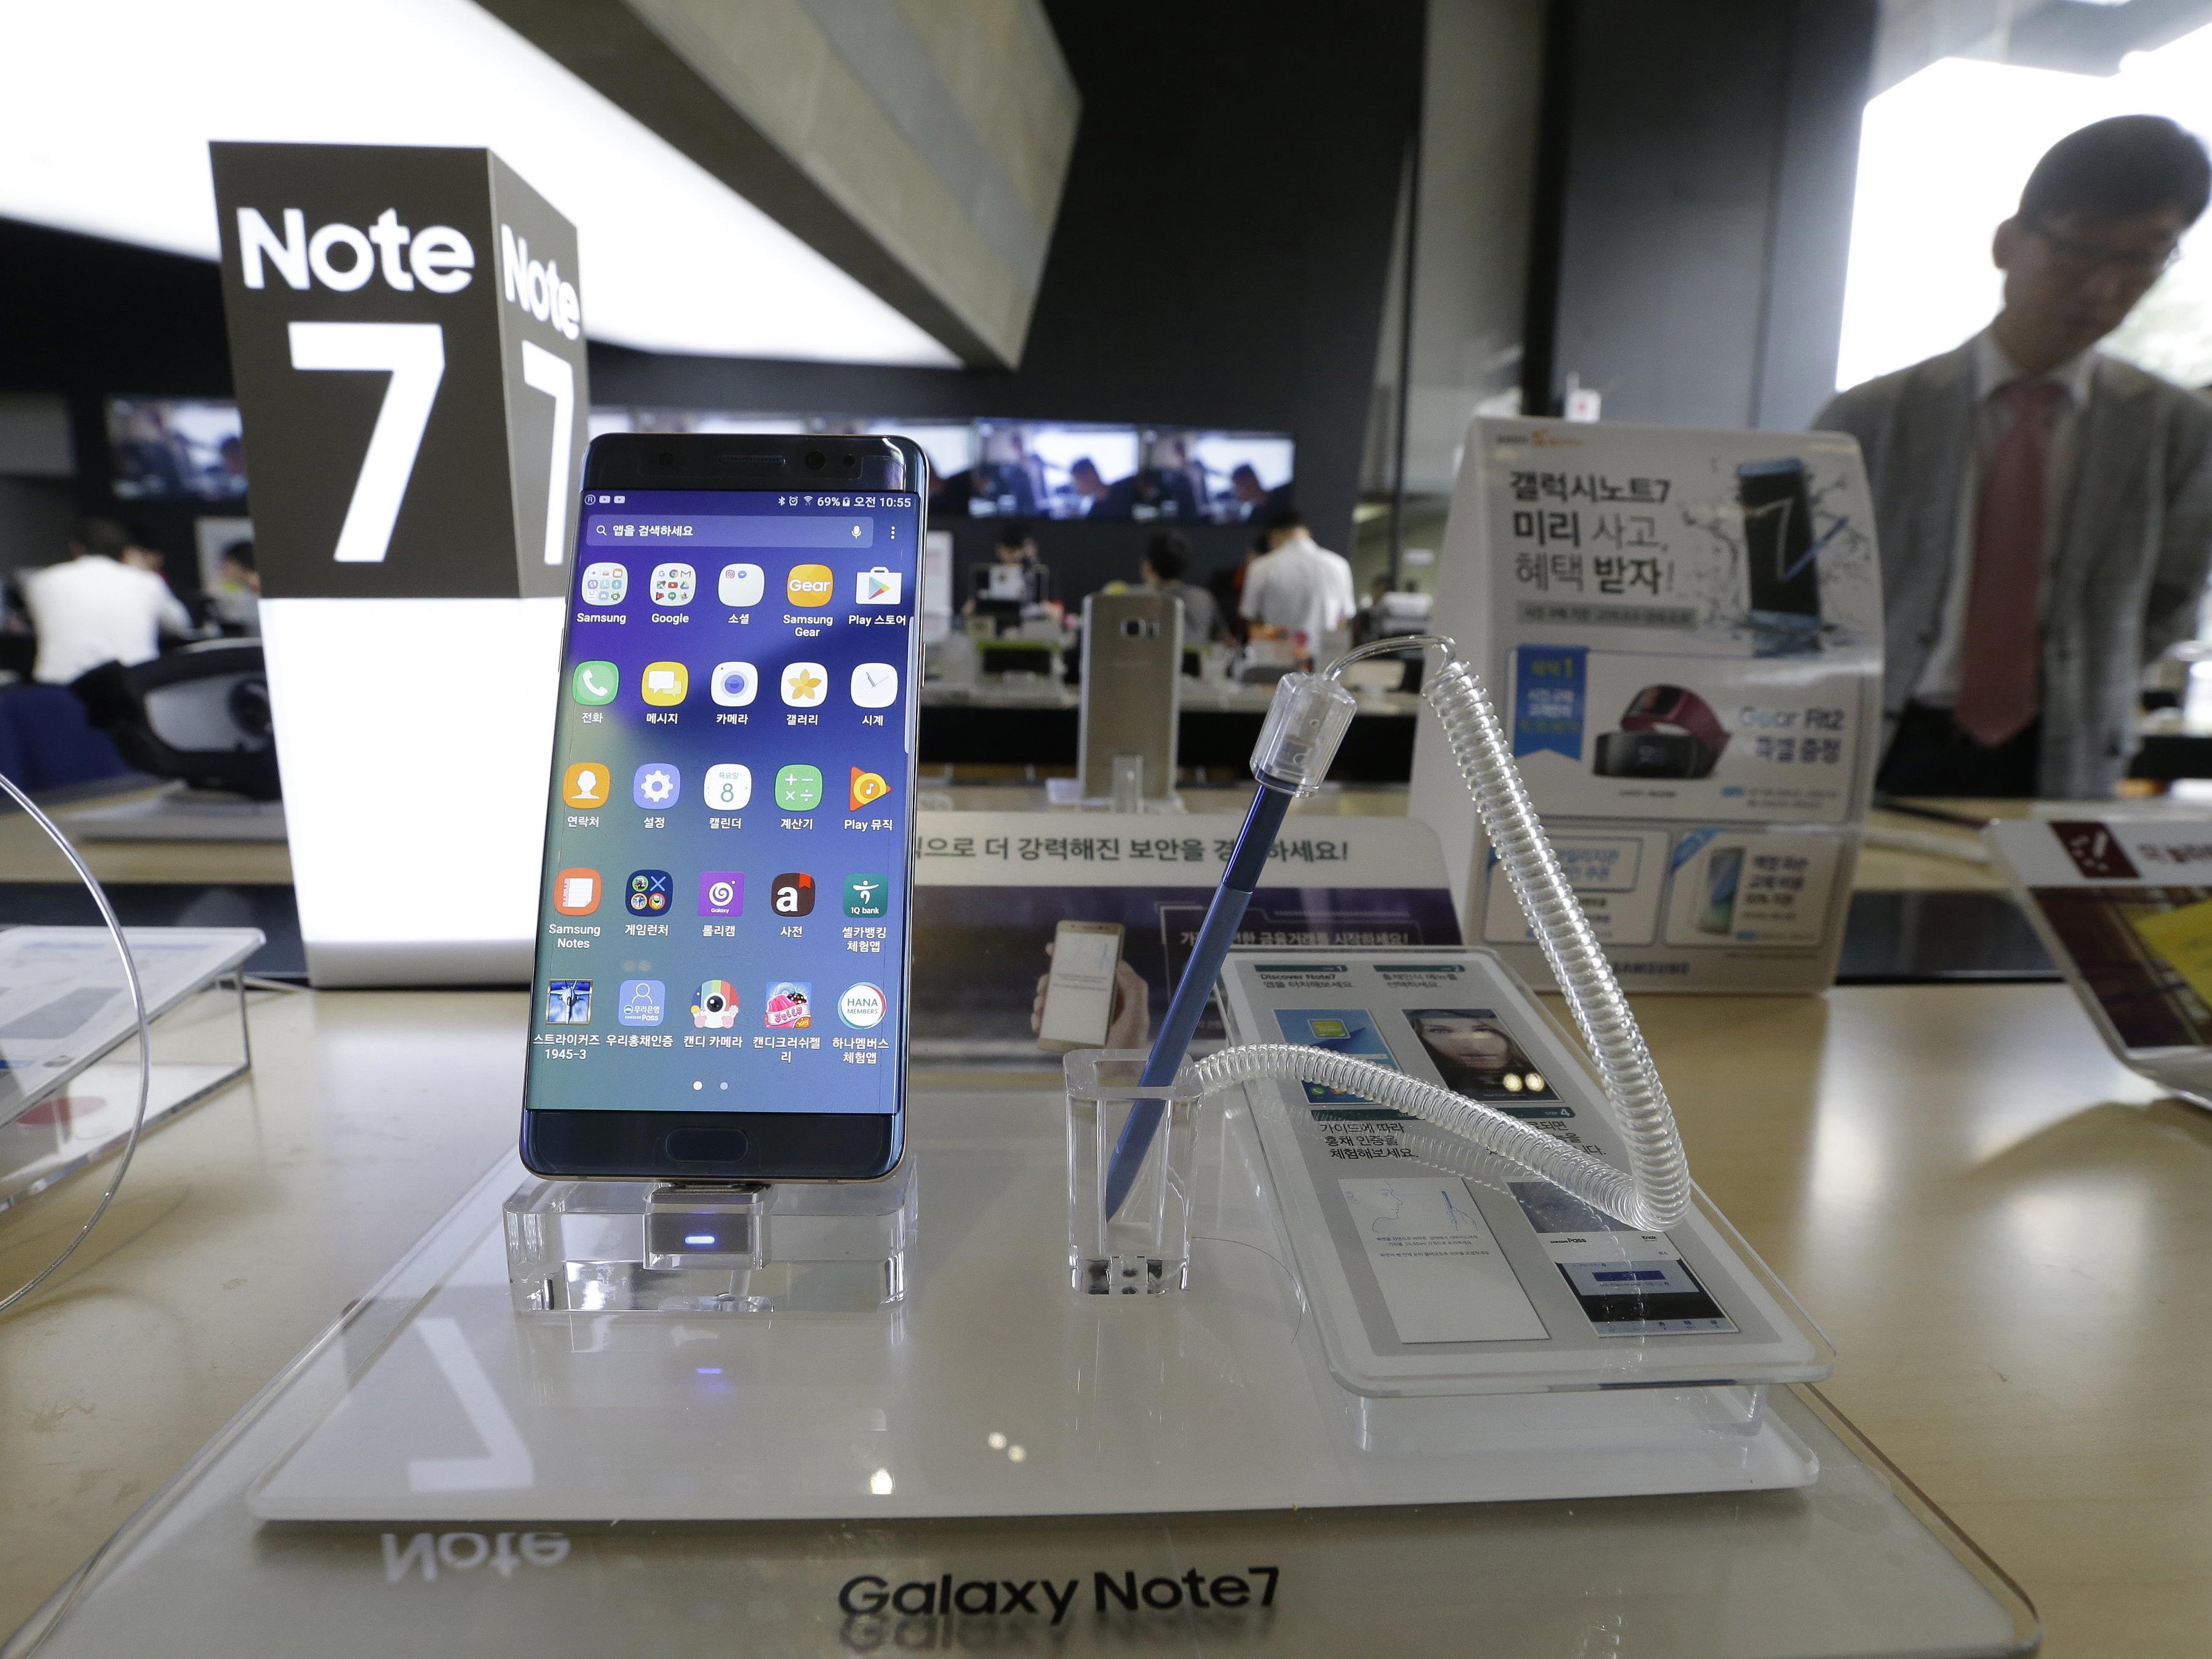 Der Verkauf des Galaxy Note 7 musste gestoppt werden.